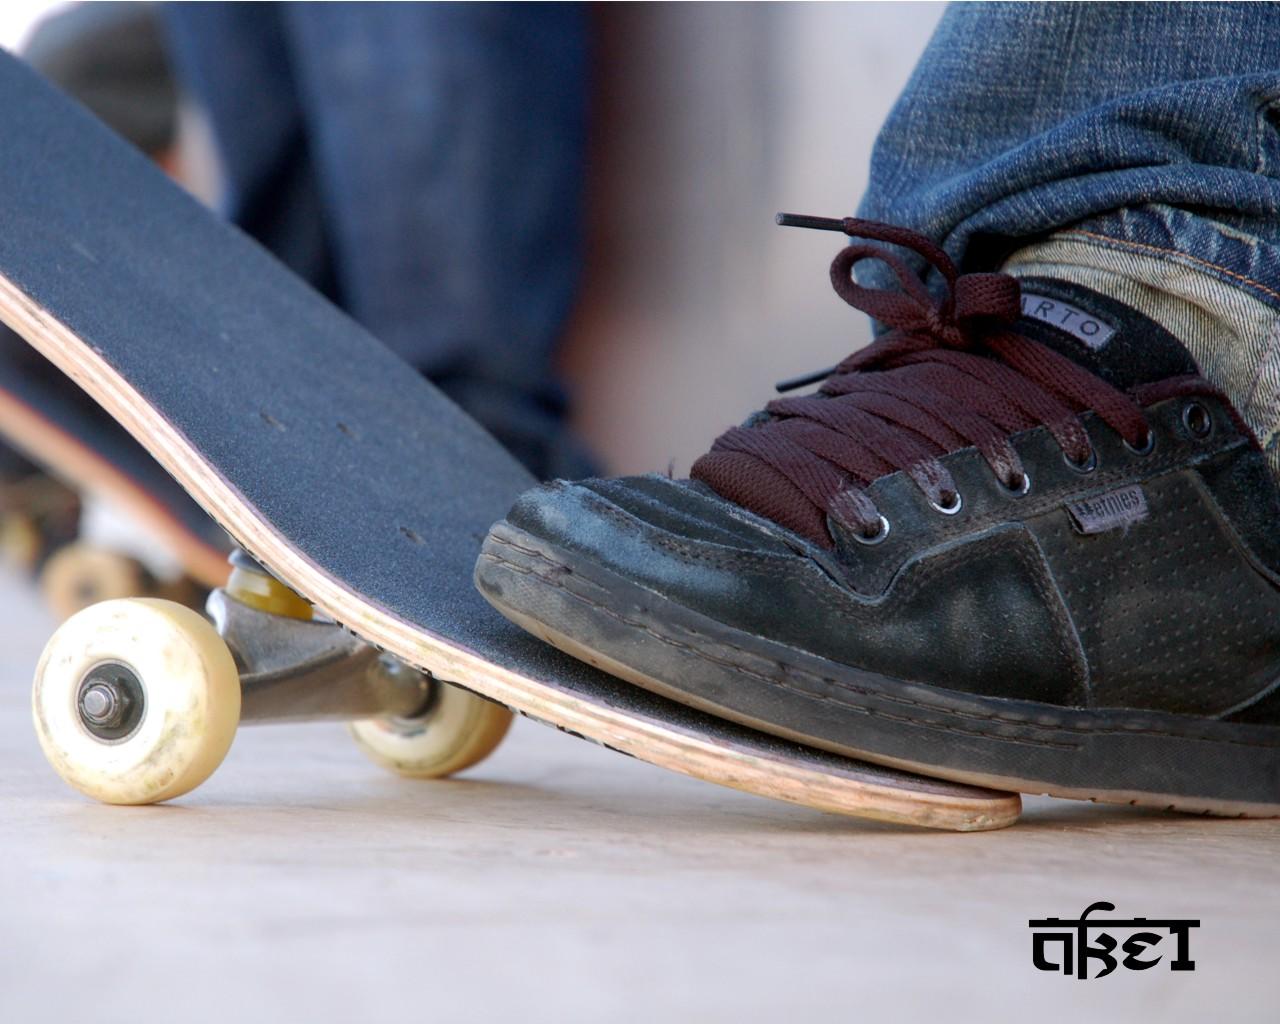 Ake1 Etnies Skate Shoes Wallpaper Skateboard